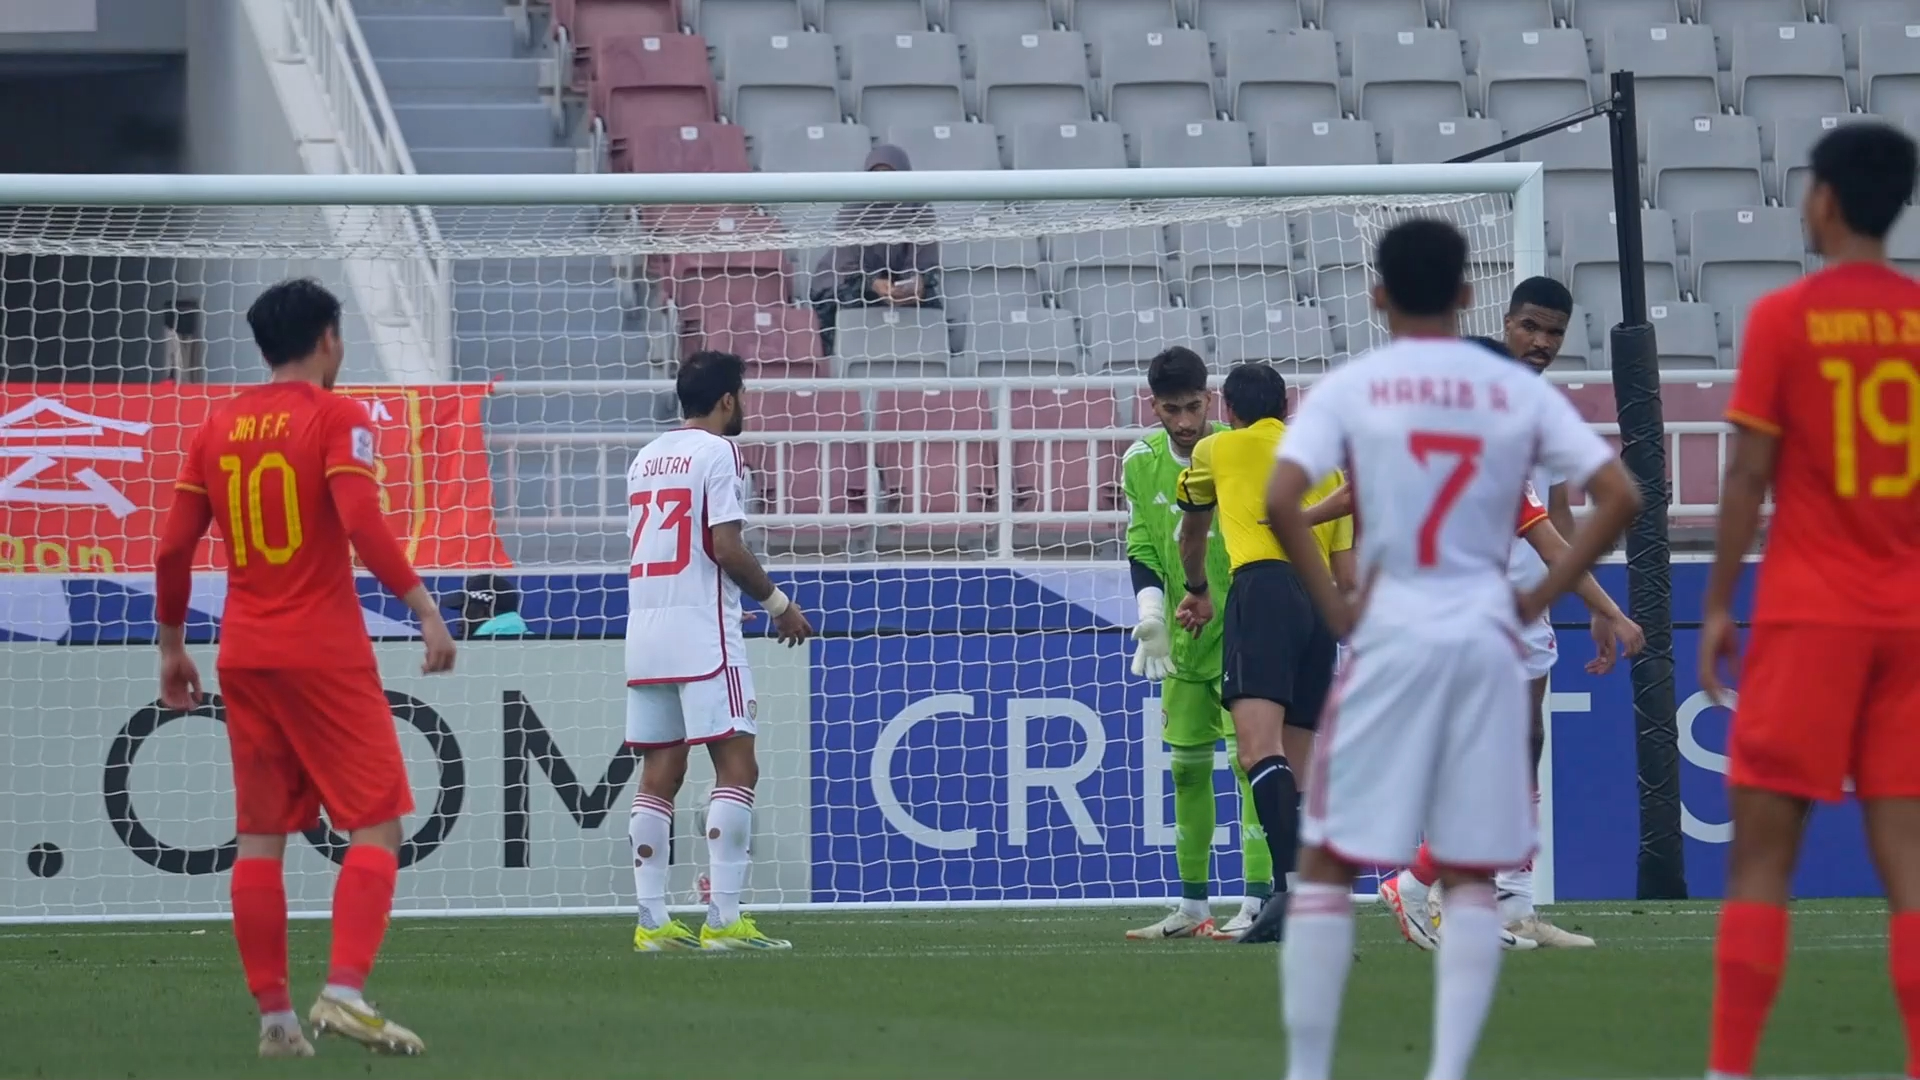 “青春的小结，奔着下一个目标努力！”“为中国足球继续作出贡献。” 中国队2:1阿联酋队，比赛日微纪录。